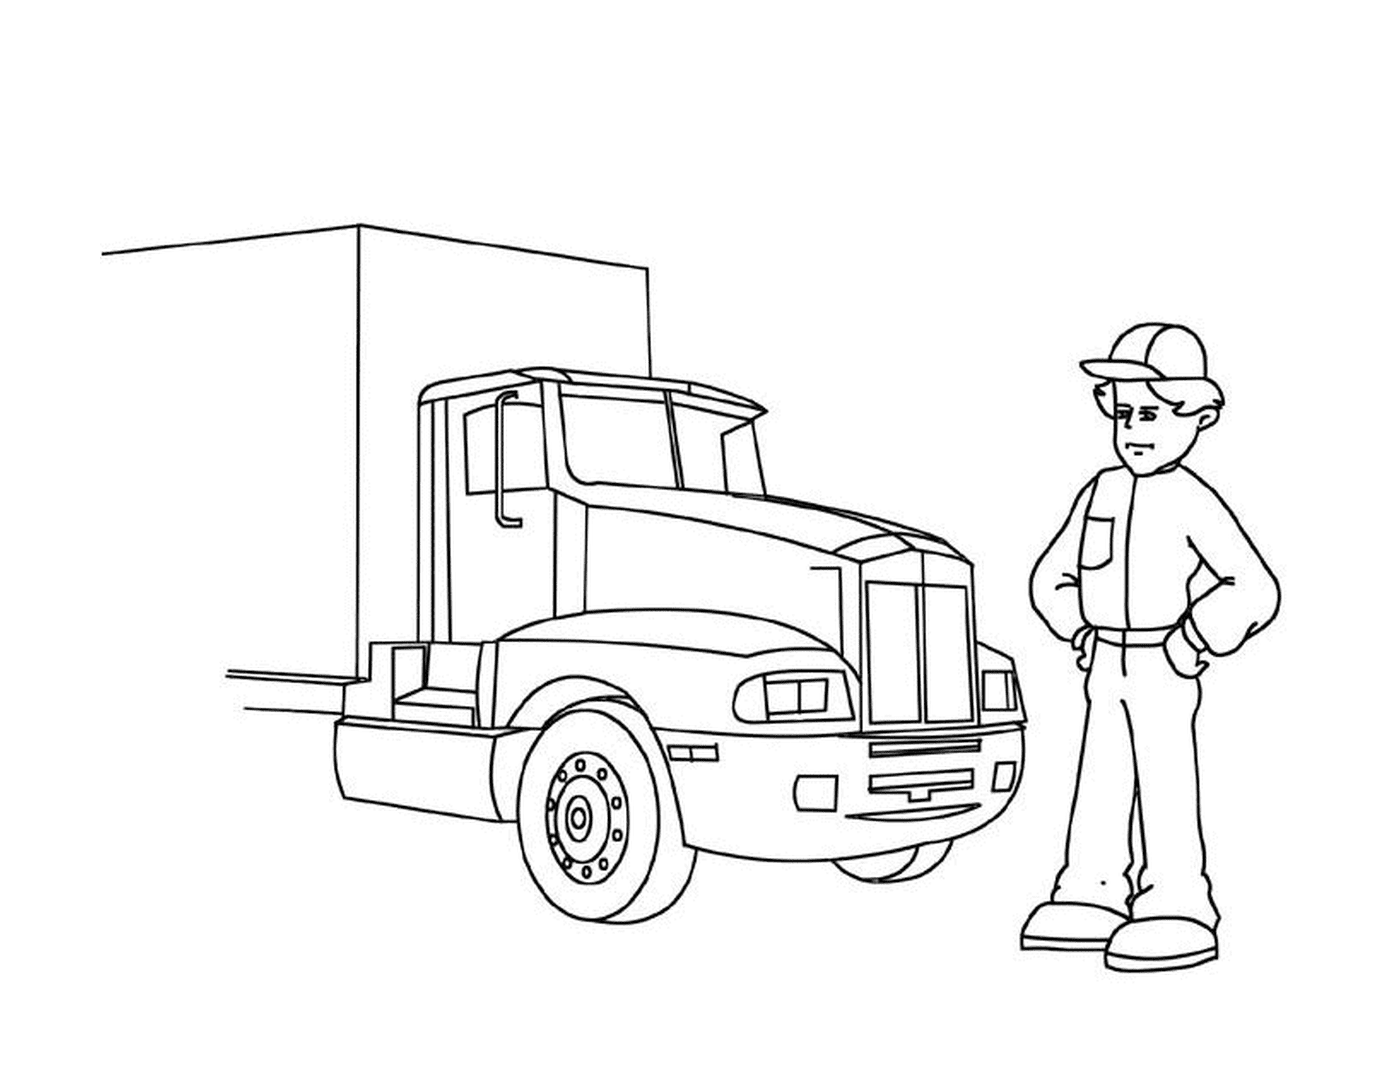  Uomo di fronte a un grosso camion 